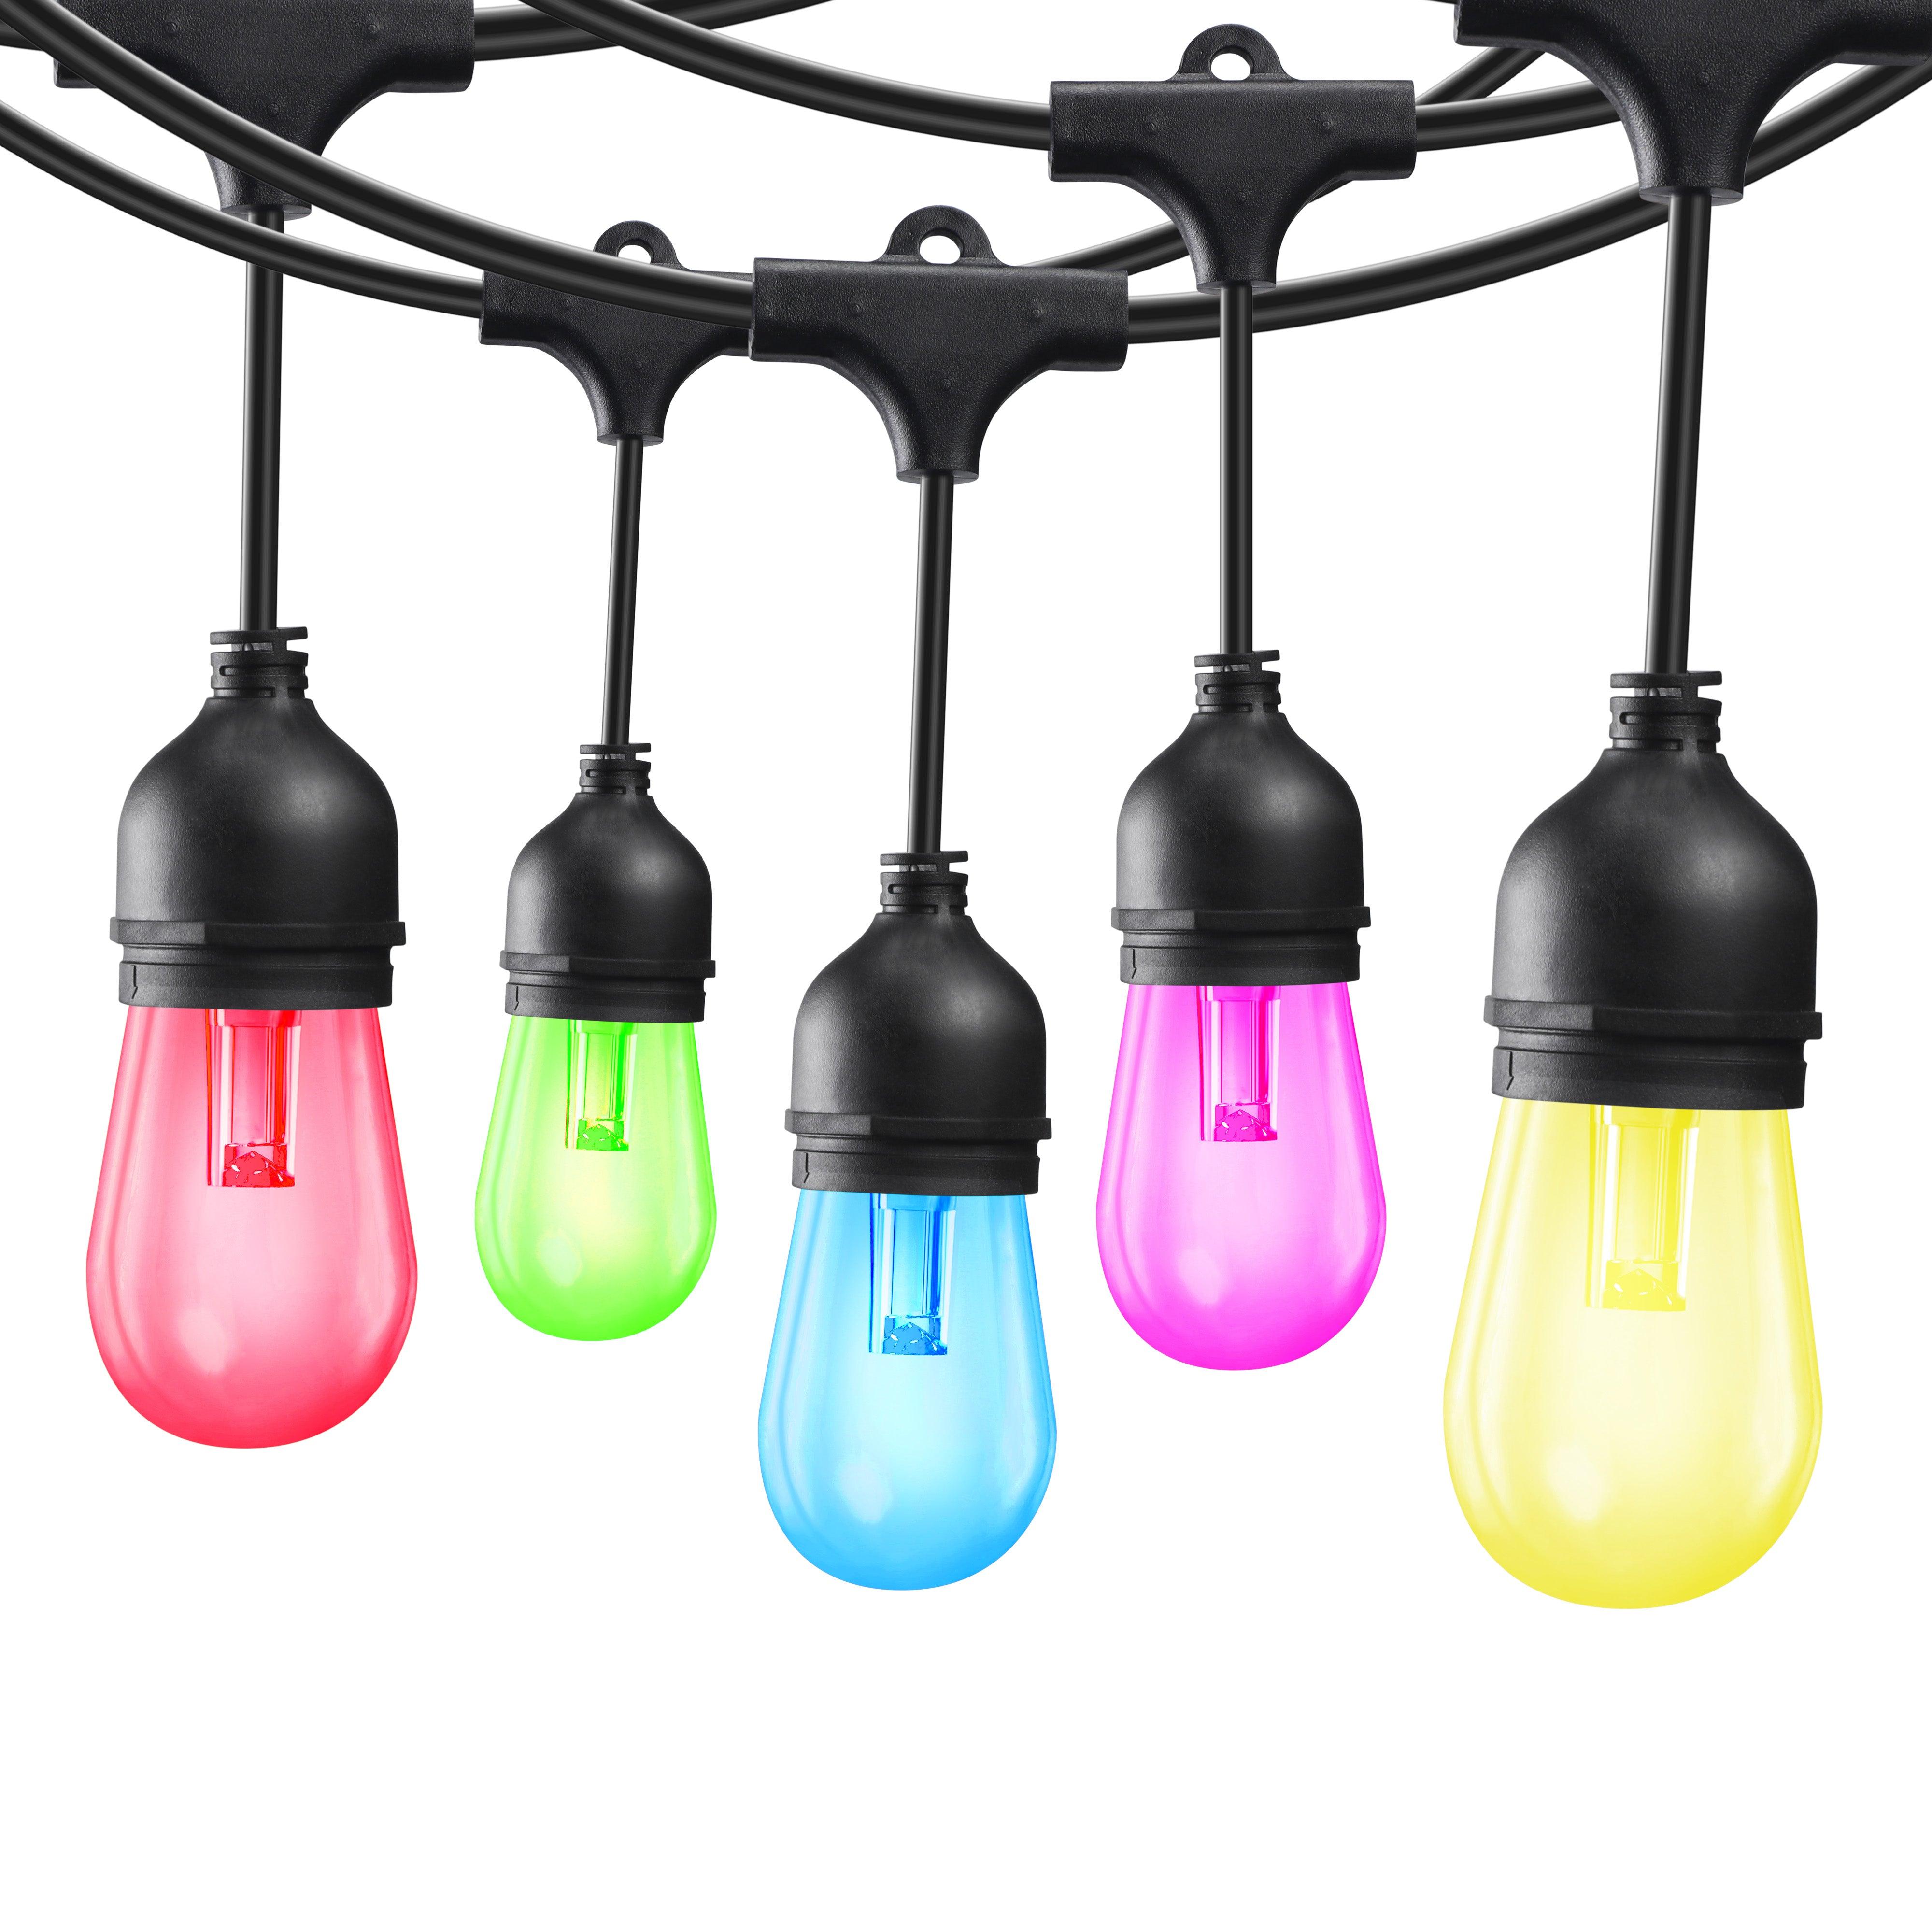 TORCHSTAR® Pro LED Multi-color Outdoor String Light - 50 Feet 15 Lights